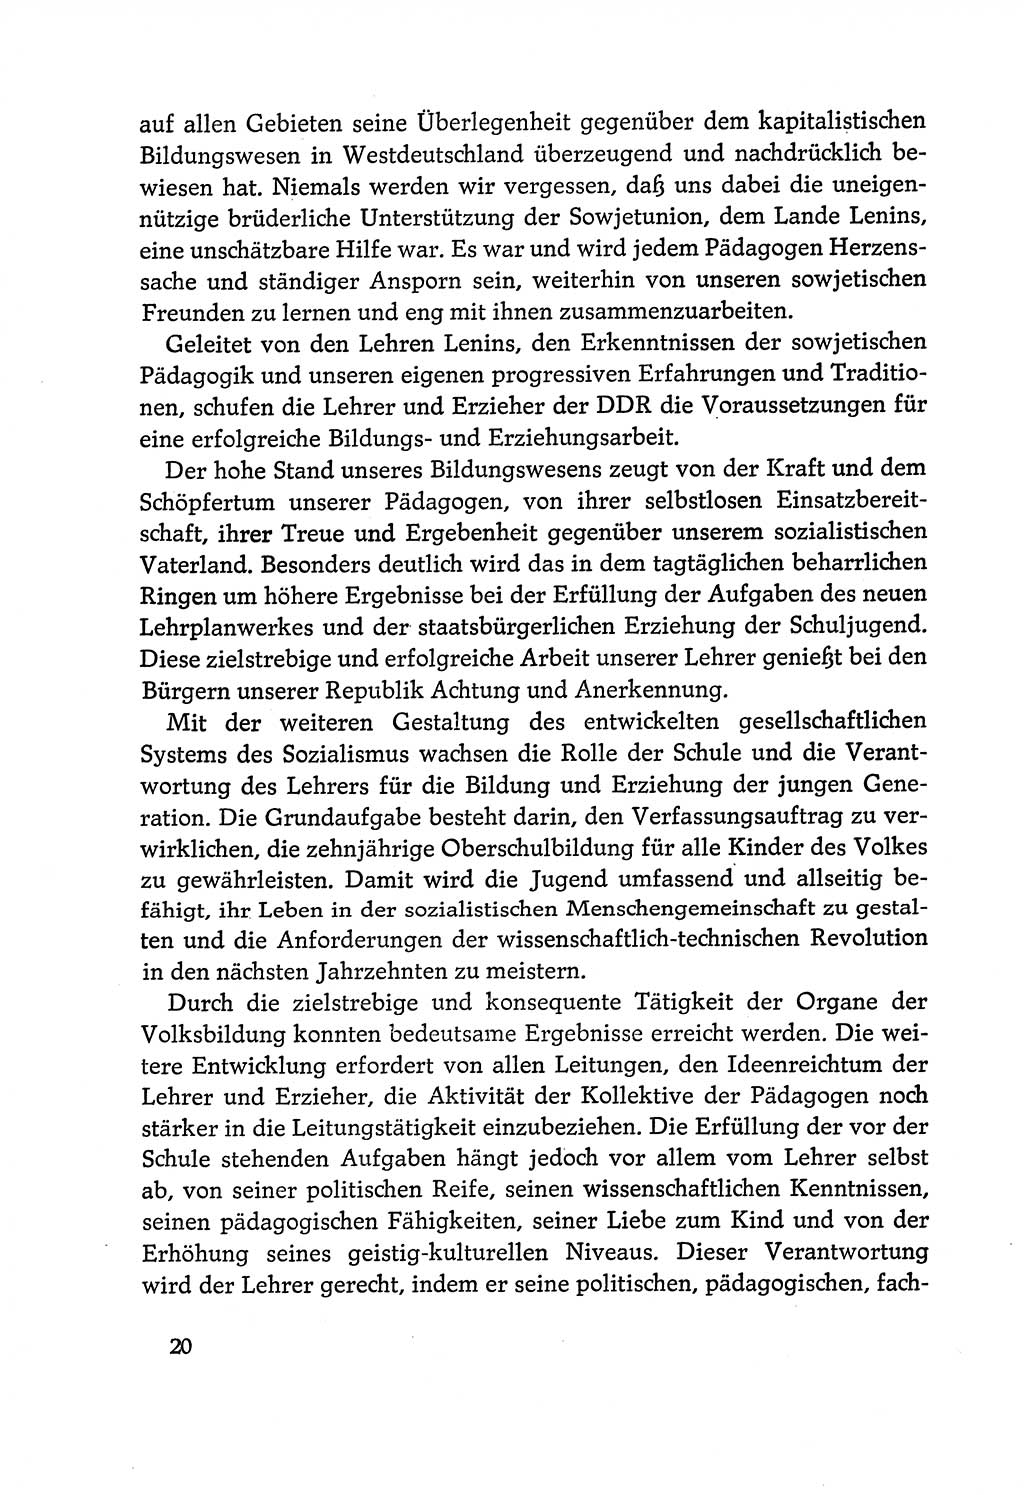 Dokumente der Sozialistischen Einheitspartei Deutschlands (SED) [Deutsche Demokratische Republik (DDR)] 1970-1971, Seite 20 (Dok. SED DDR 1970-1971, S. 20)